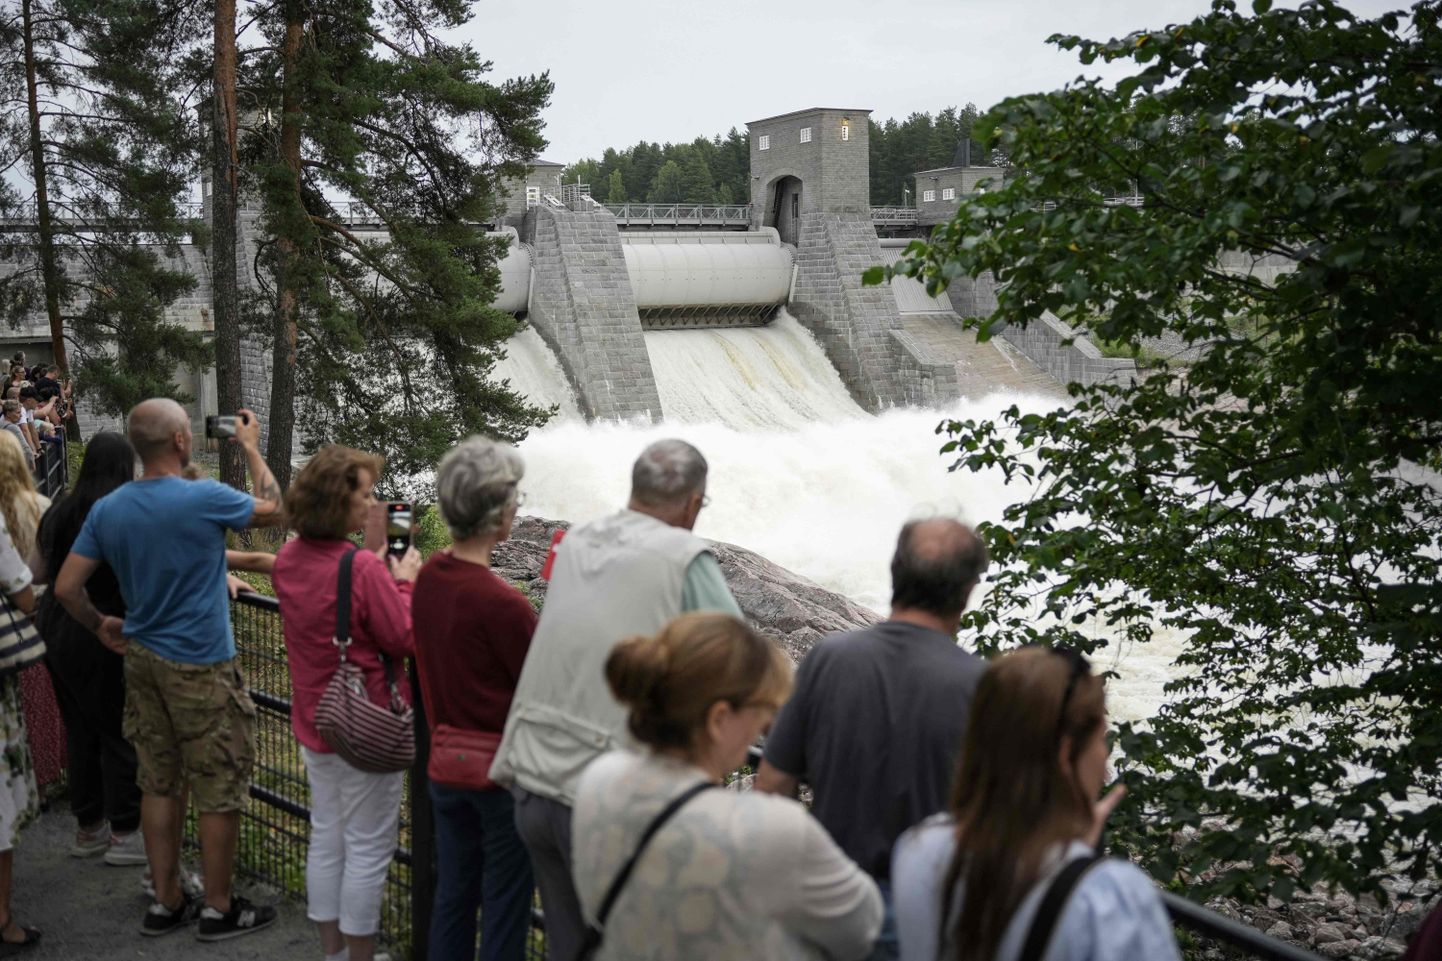 Soome üks vanimaid ja populaarsemaid turismiobjekte - Vuoksi jõe kosk.